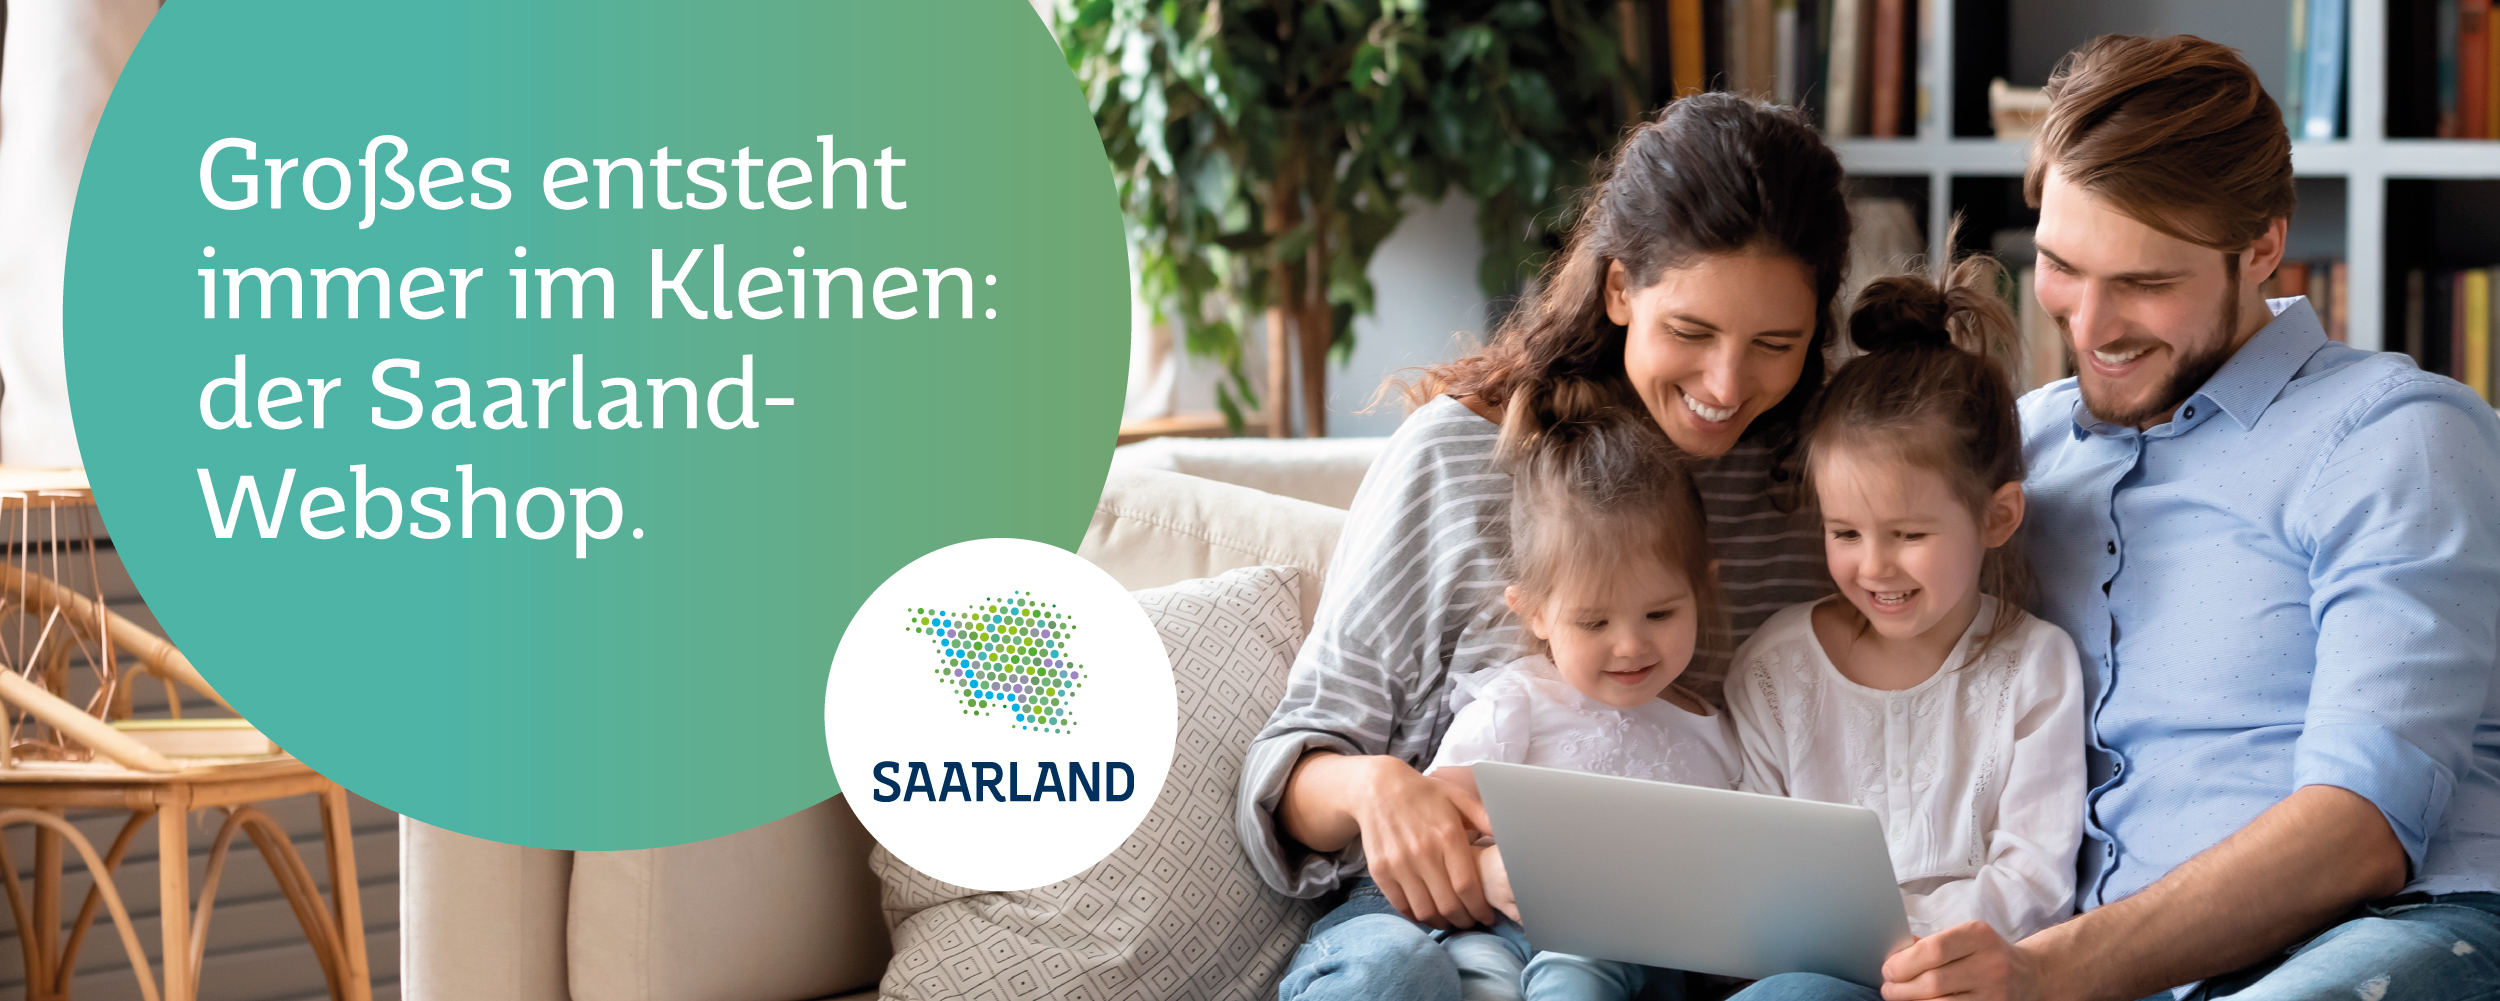 Webshop Saarland Familie